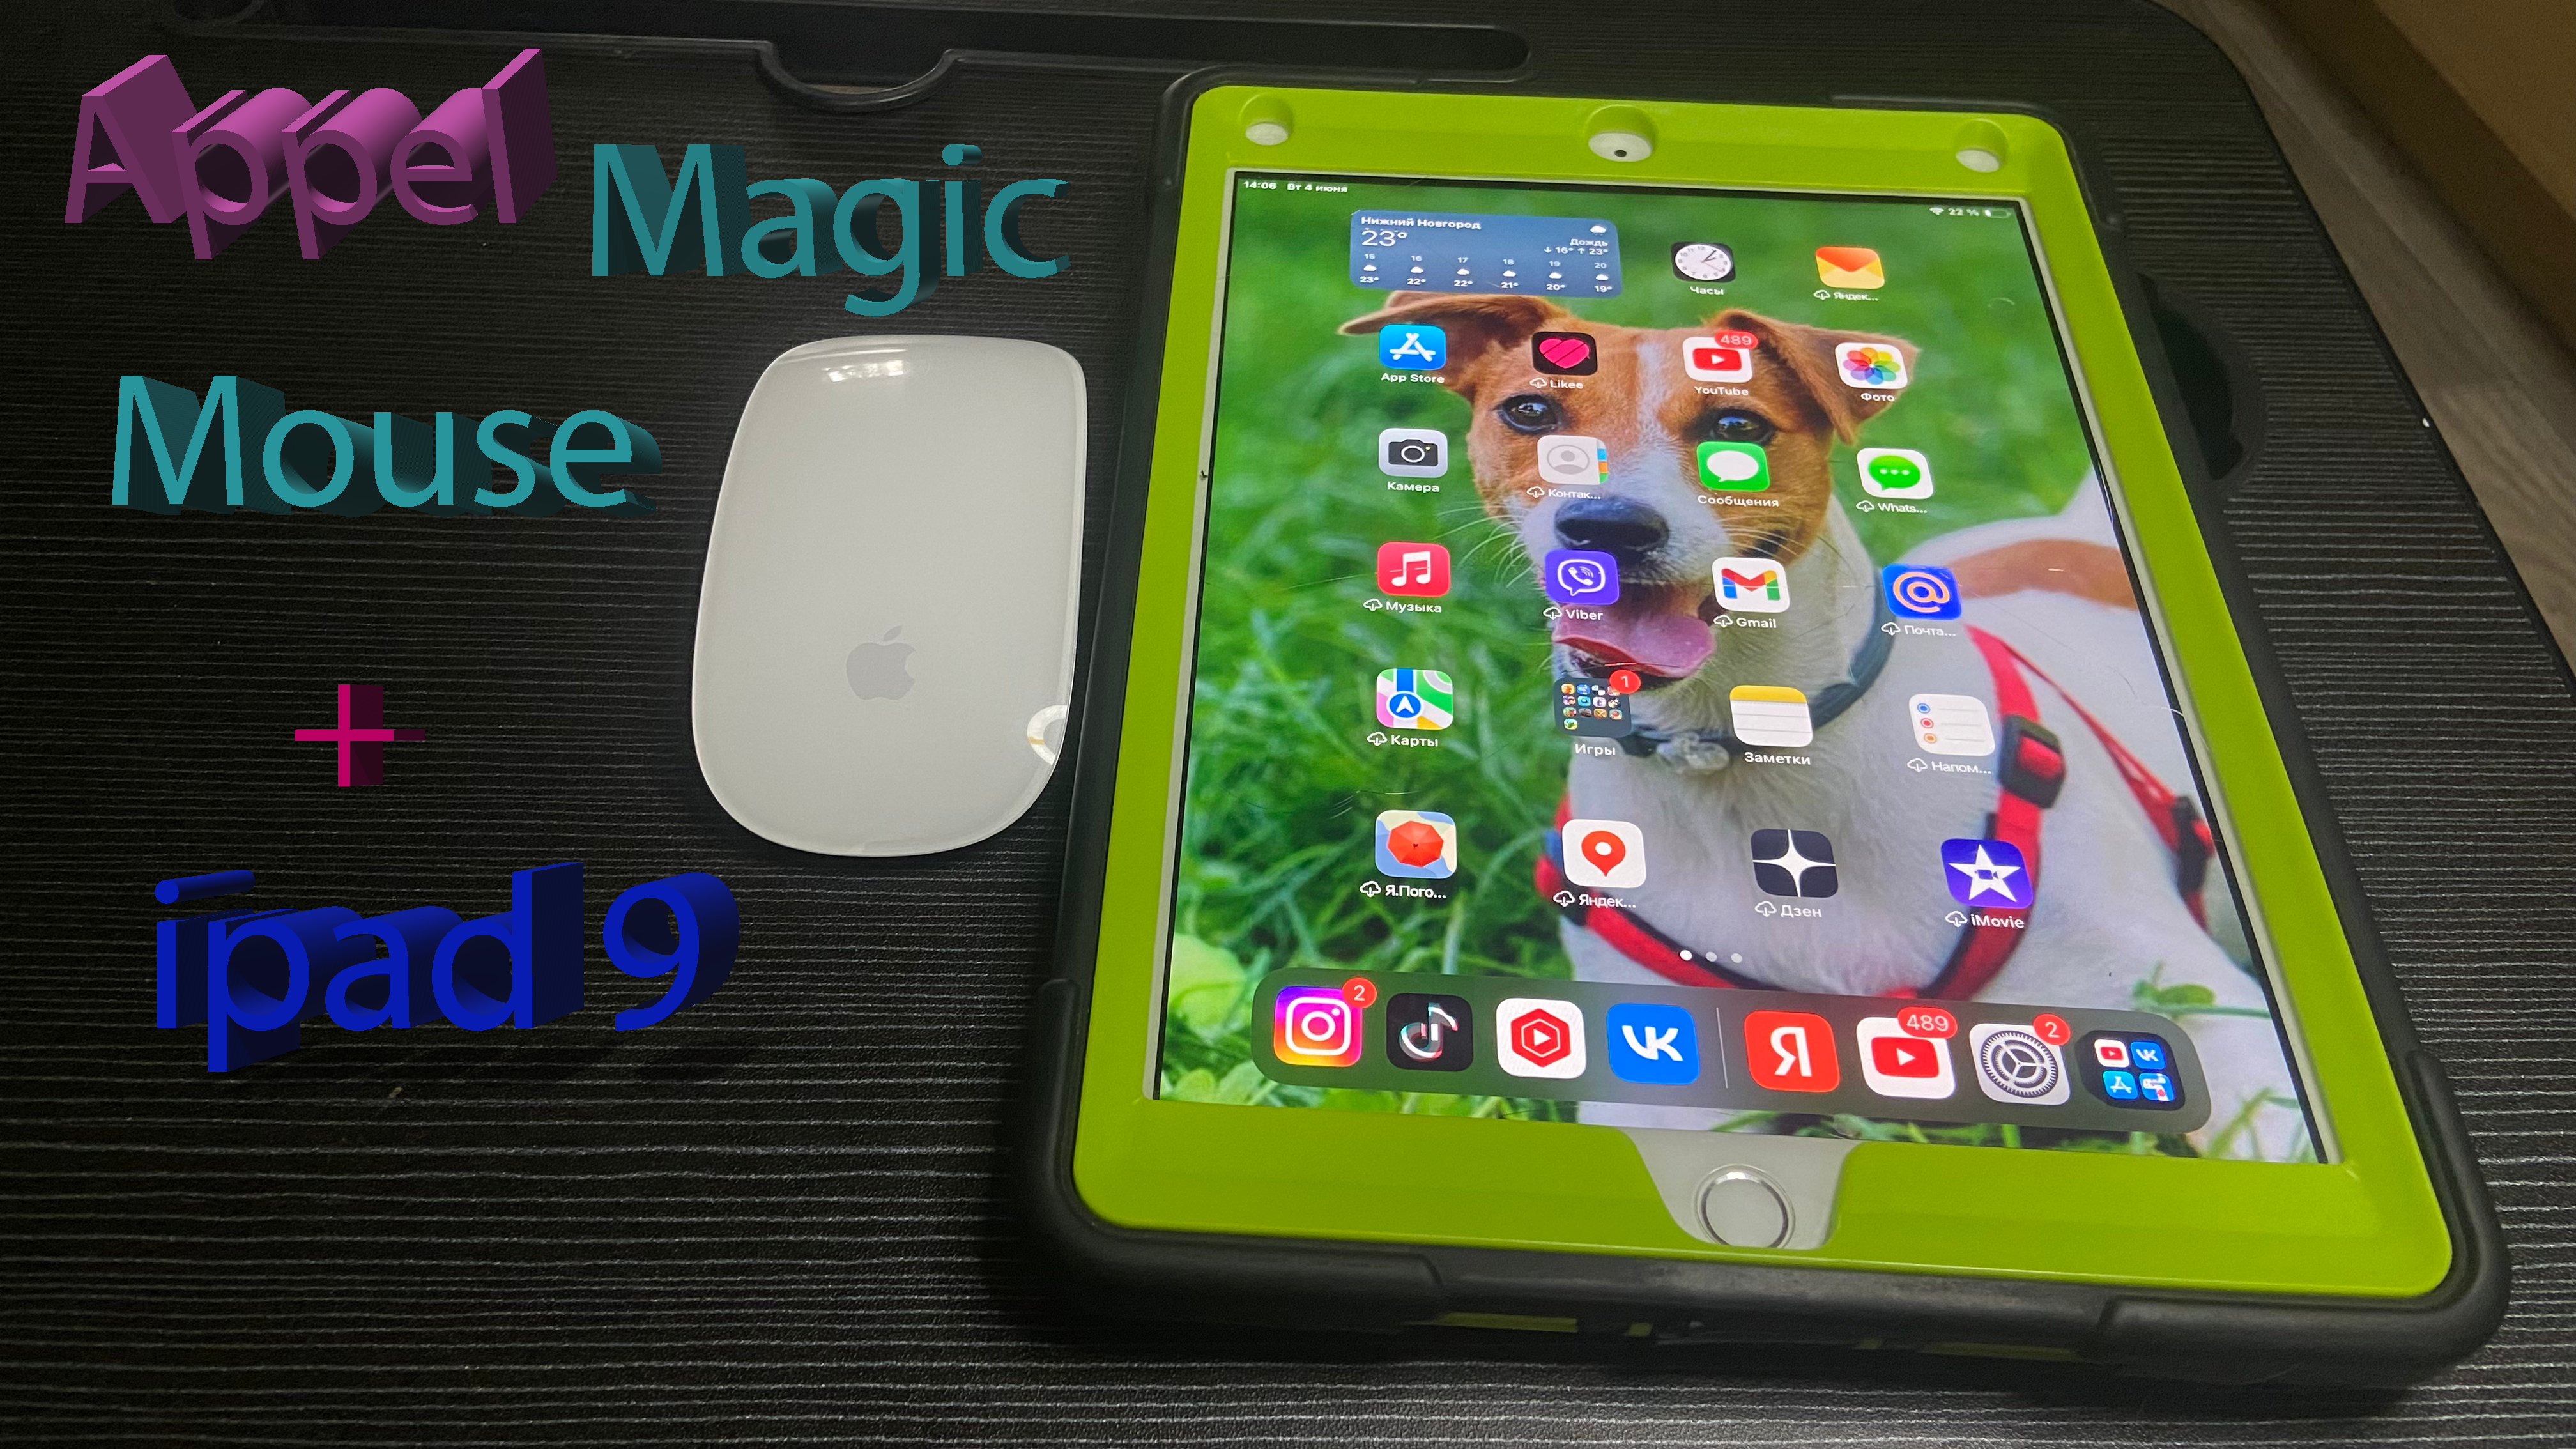 Appel Magic Mouse3 + Ipad 6 2018